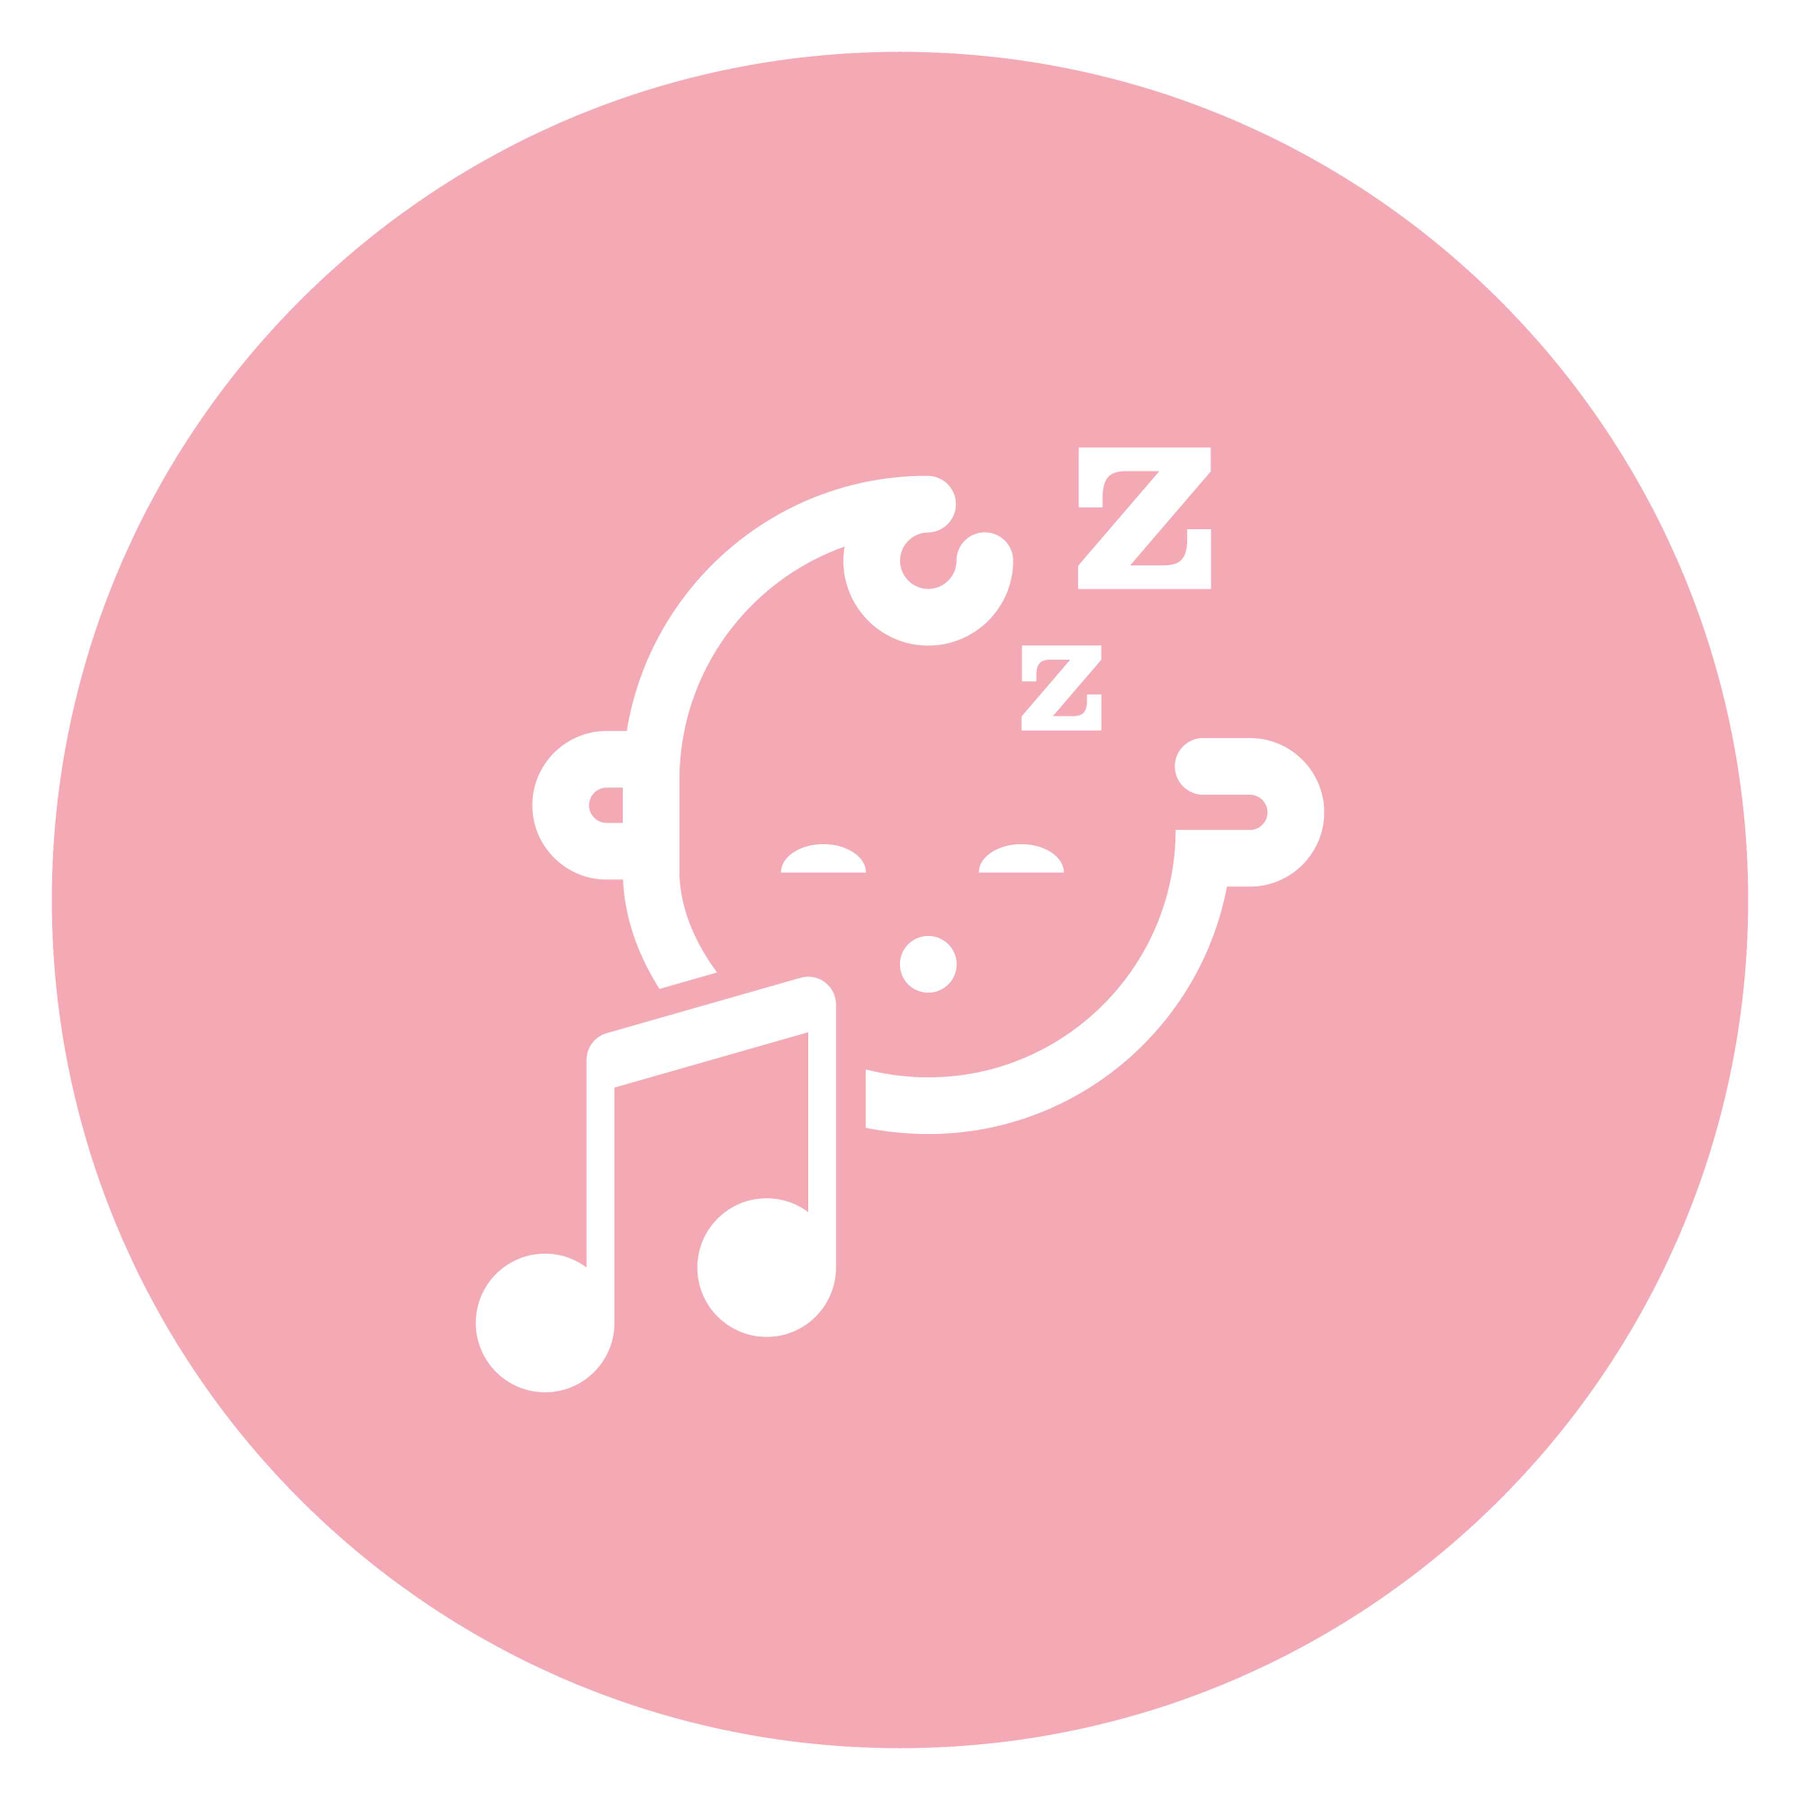 Mélodie « Schlaf Kindlein schlaf »